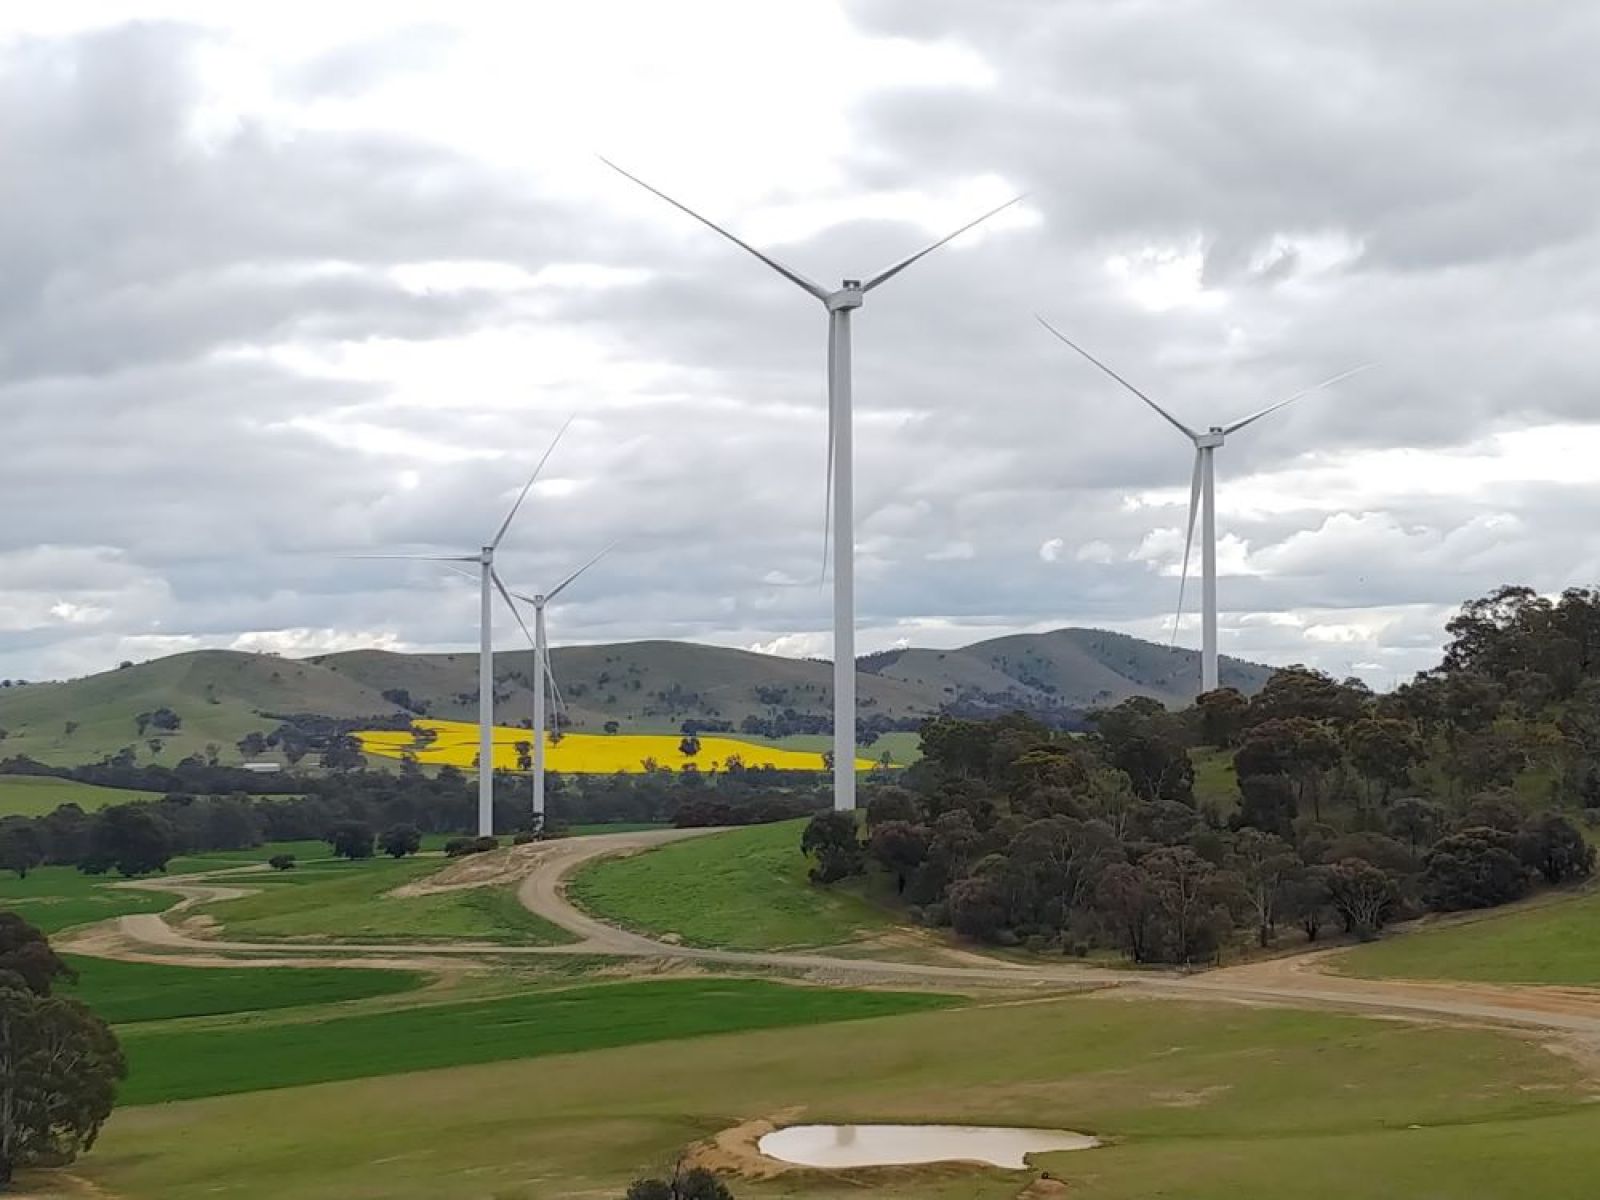 Four wind turbines located at Bulgana Wind Farm